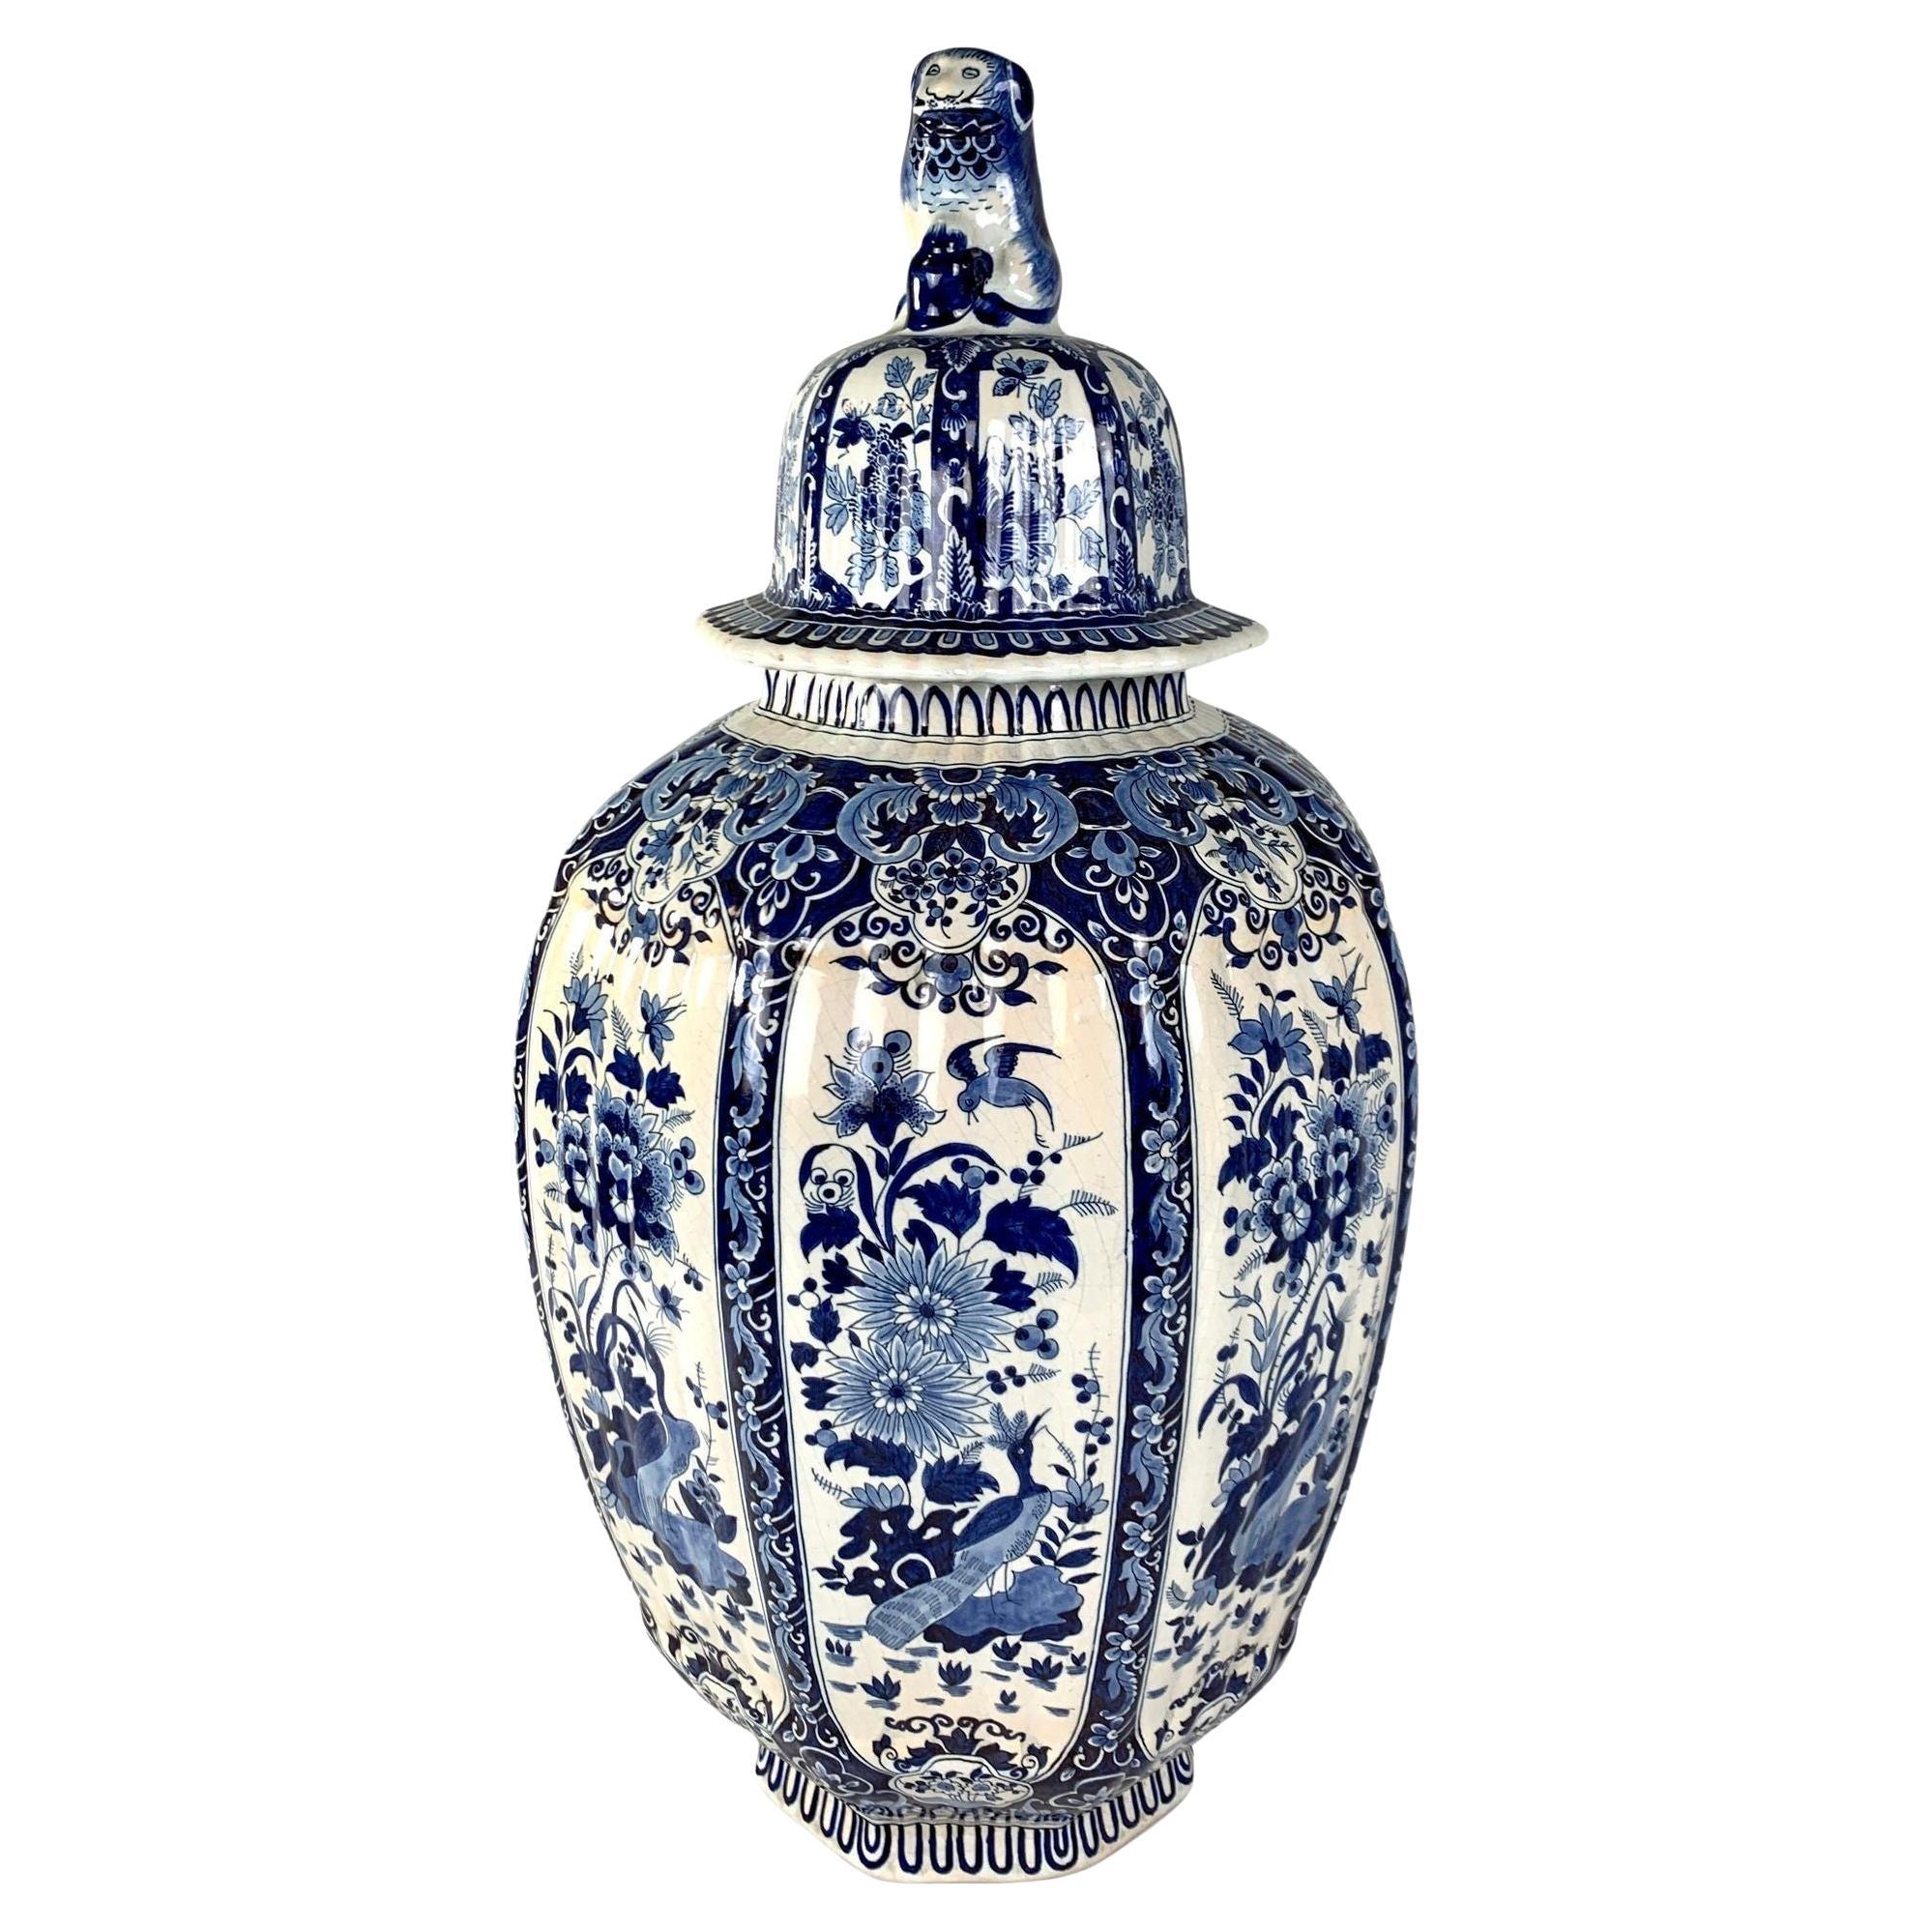 Grande jarre en faïence de Delft bleue et blanche fabriquée en Belgique vers 1890